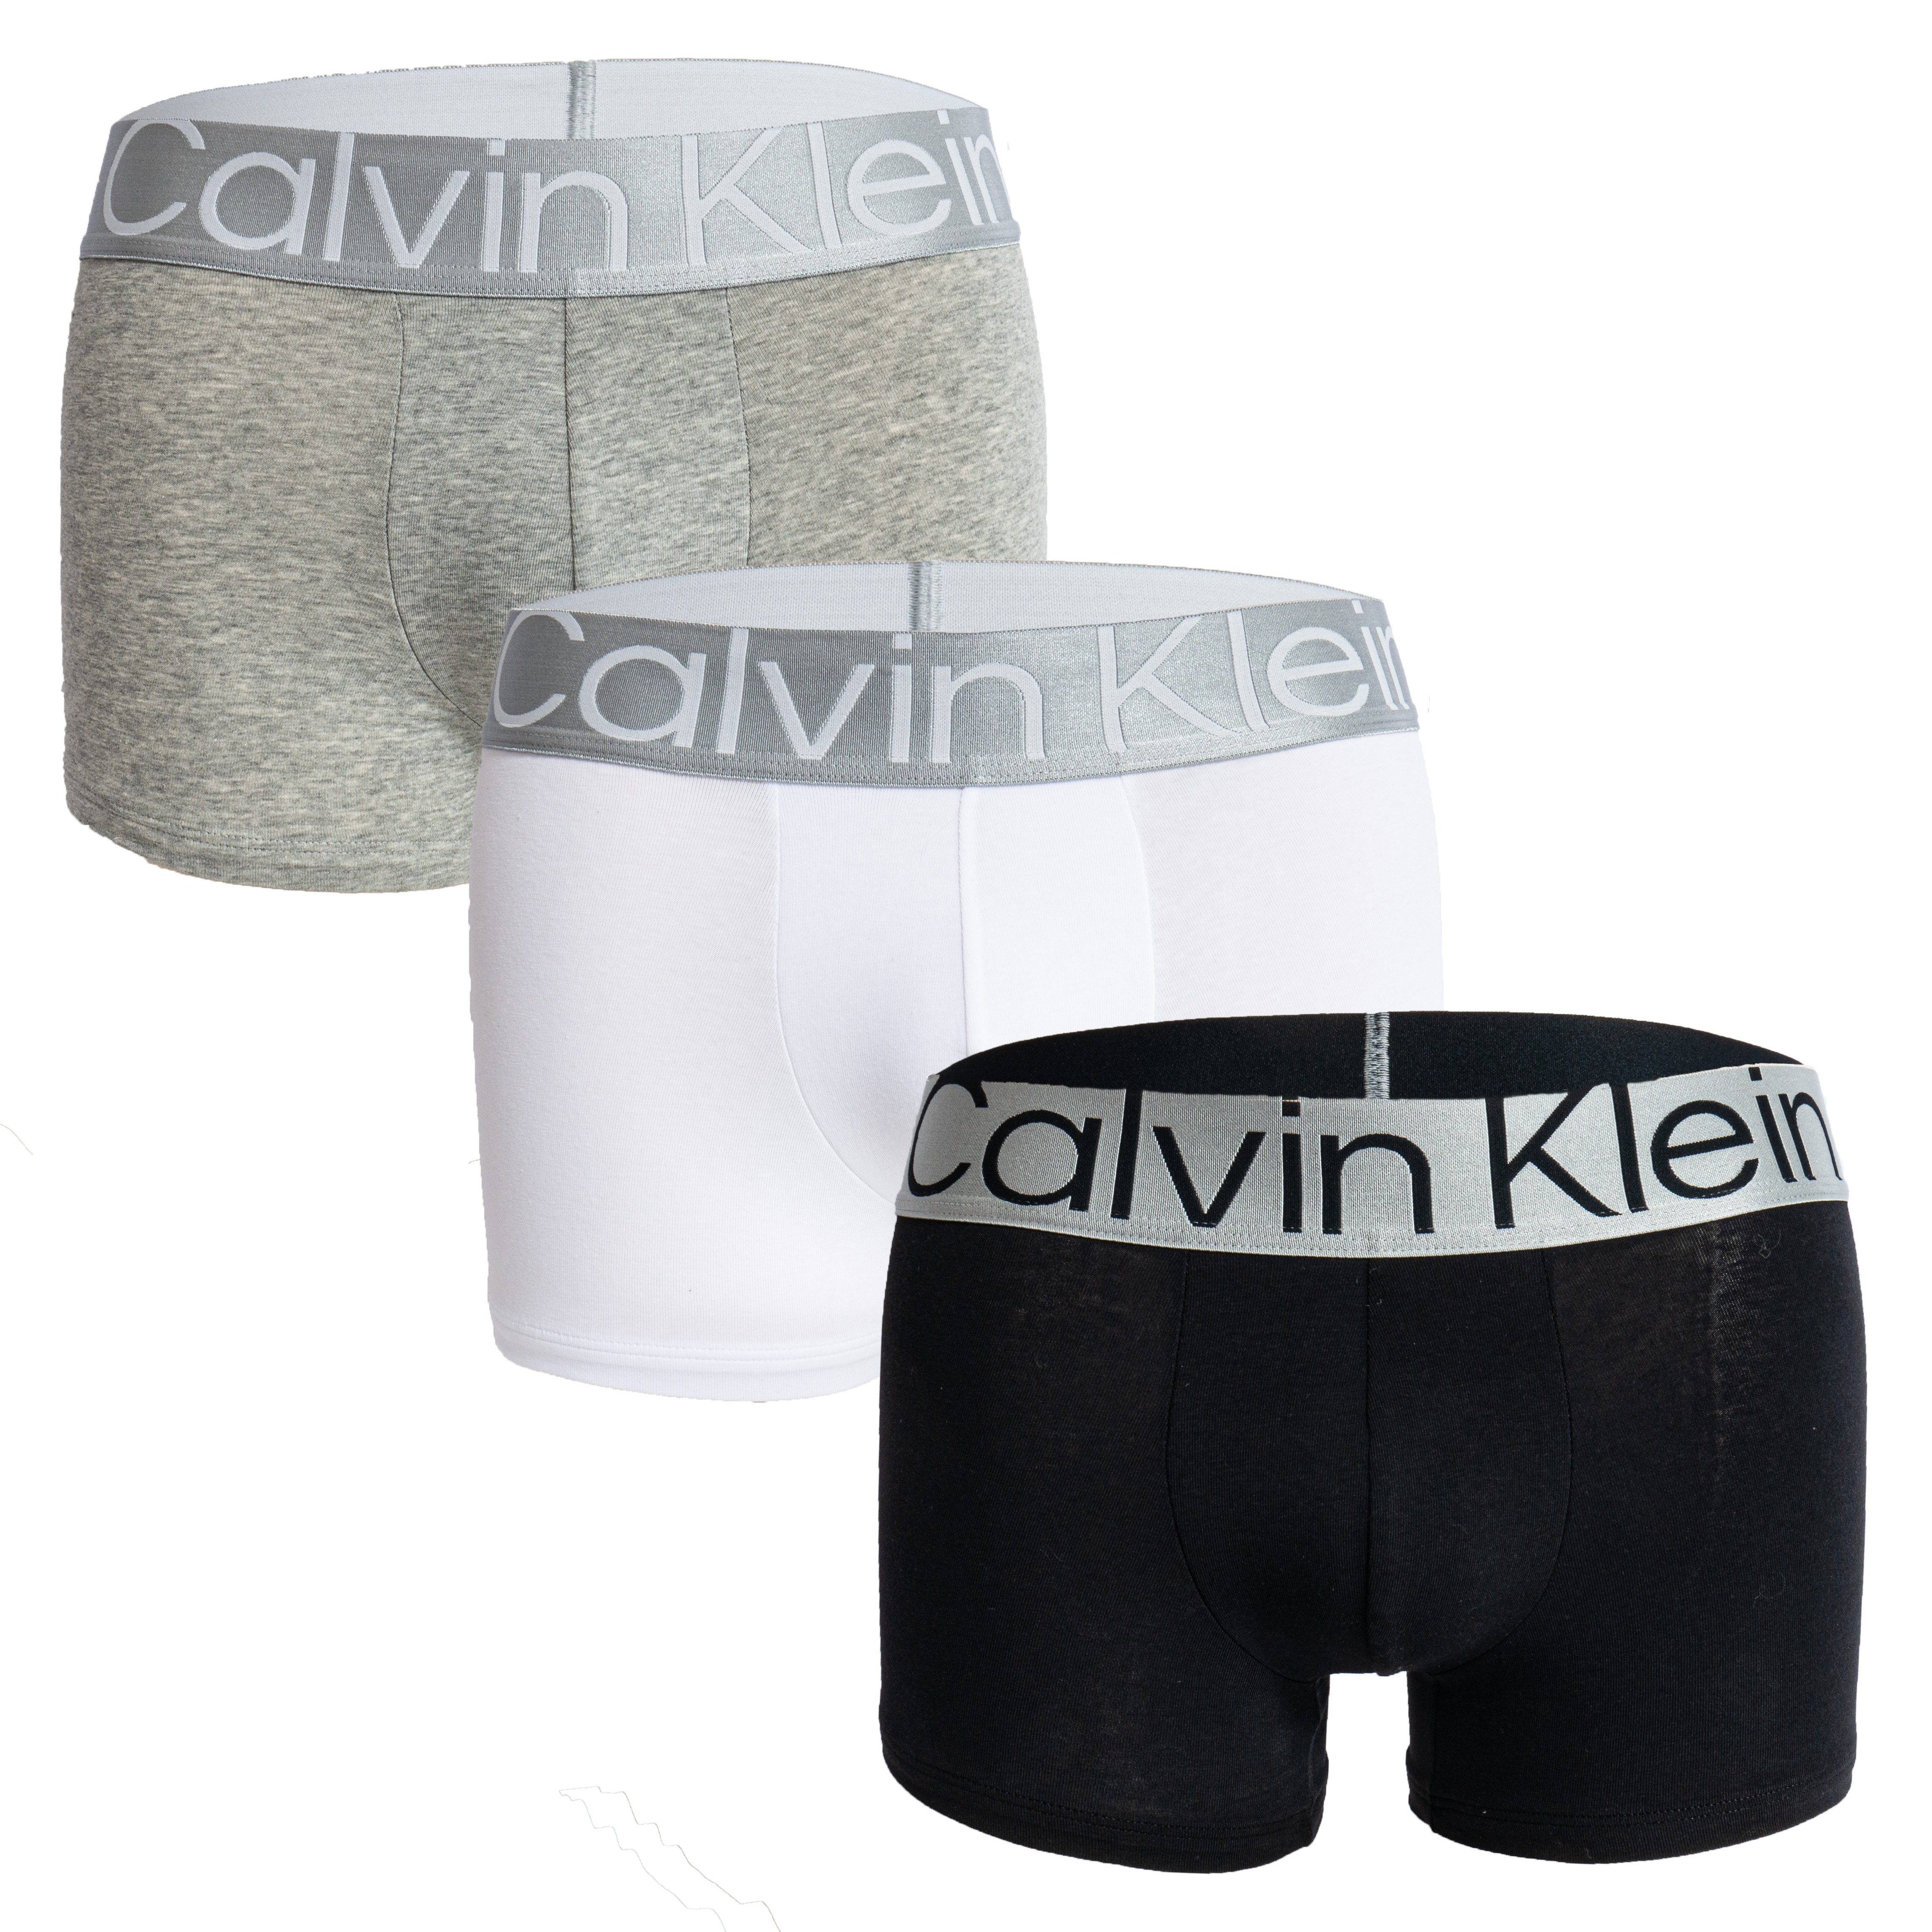 CALVIN KLEIN Boxer algodón streetch. Talles M-L-XL